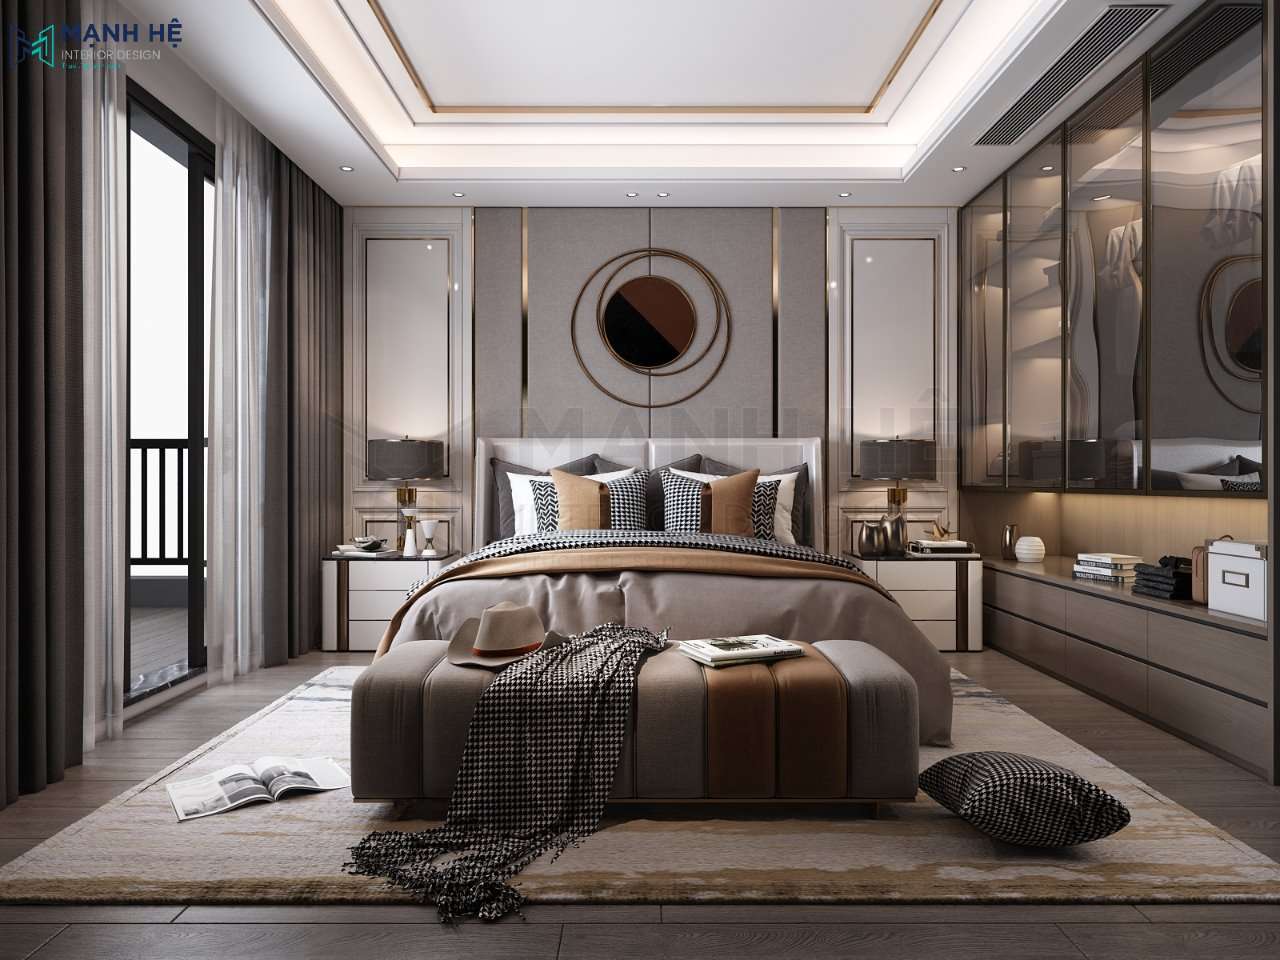 Gợi ý 20+ Mẫu thiết kế phòng ngủ biệt thự đẹp sang trọng và ấn tượng nhất